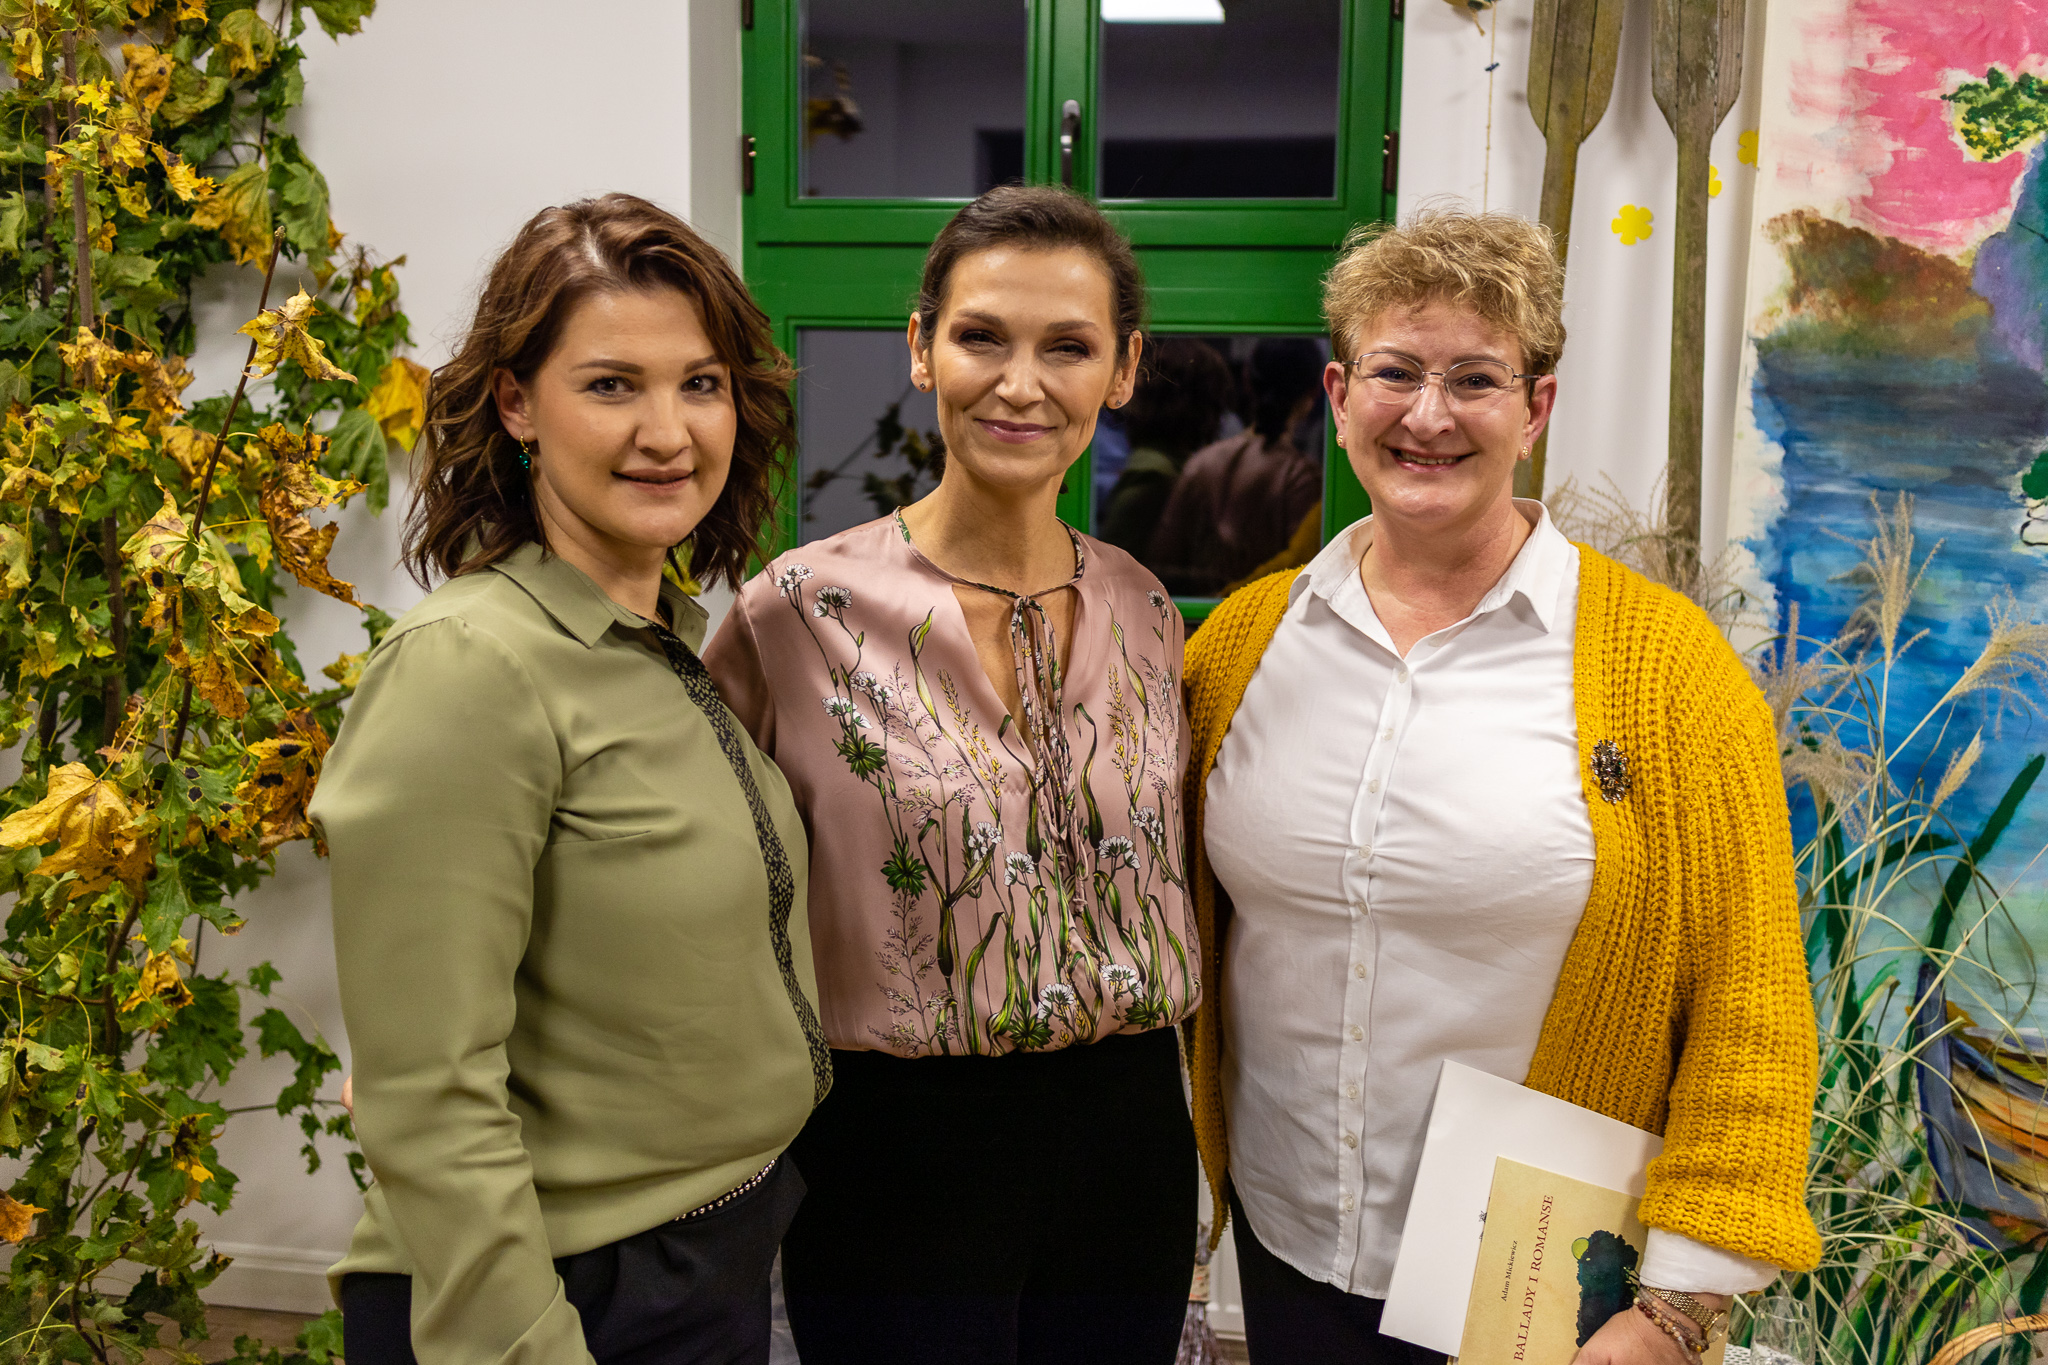 Olga Bończyk, Marlena Rogowska oraz Anna Lewandowska pozujące wspólnie do zdjęcia